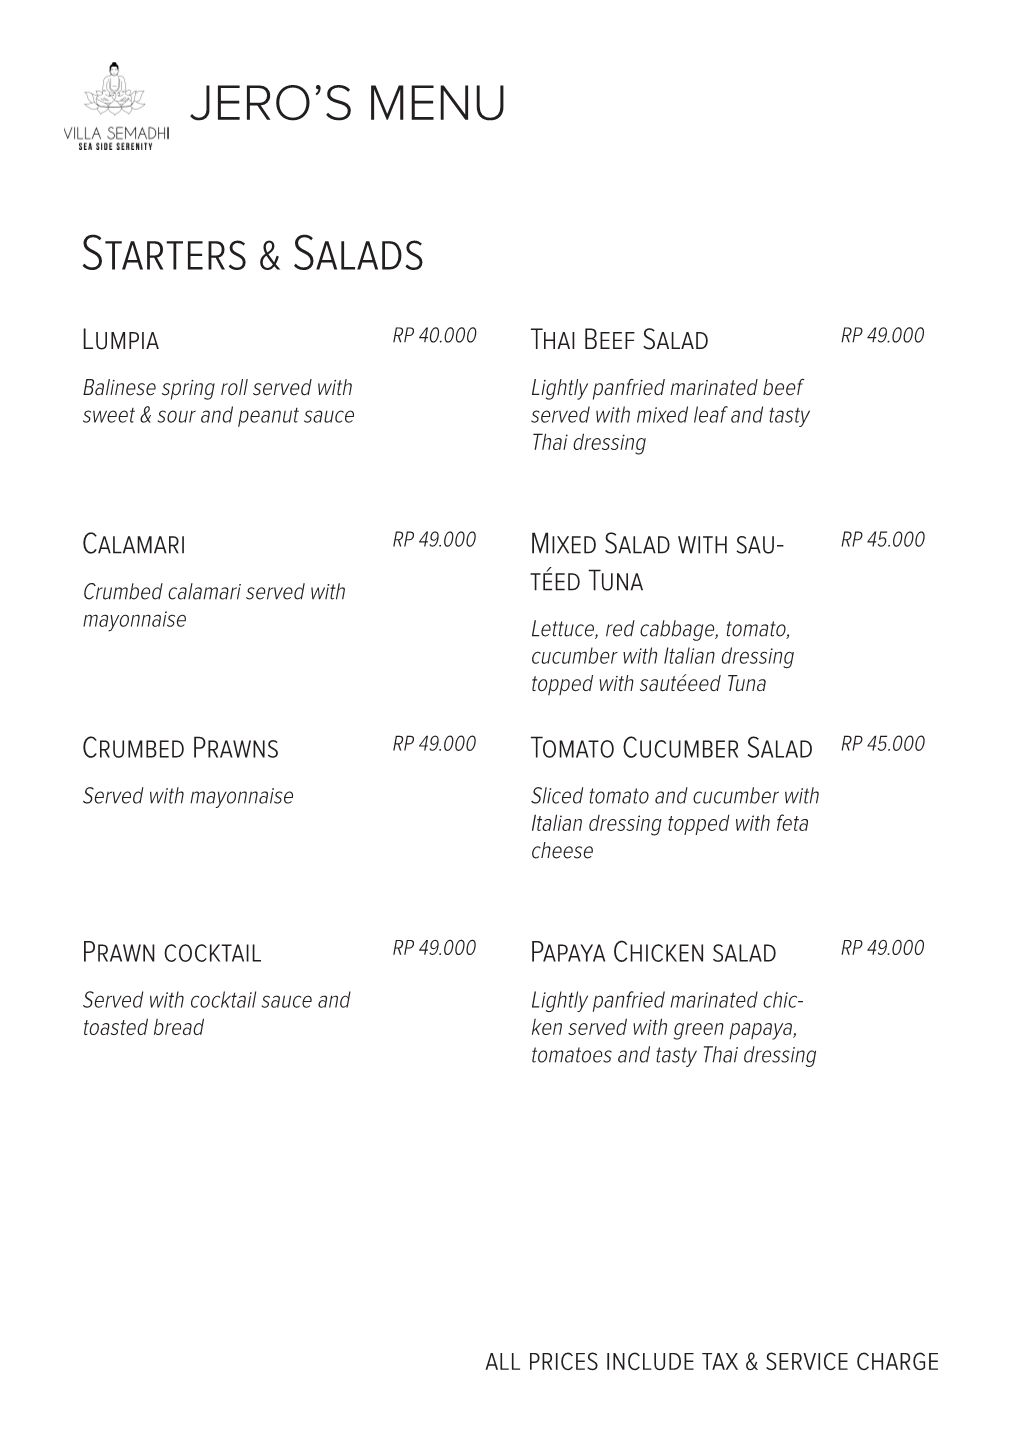 JERO's MENU Starters & Salads